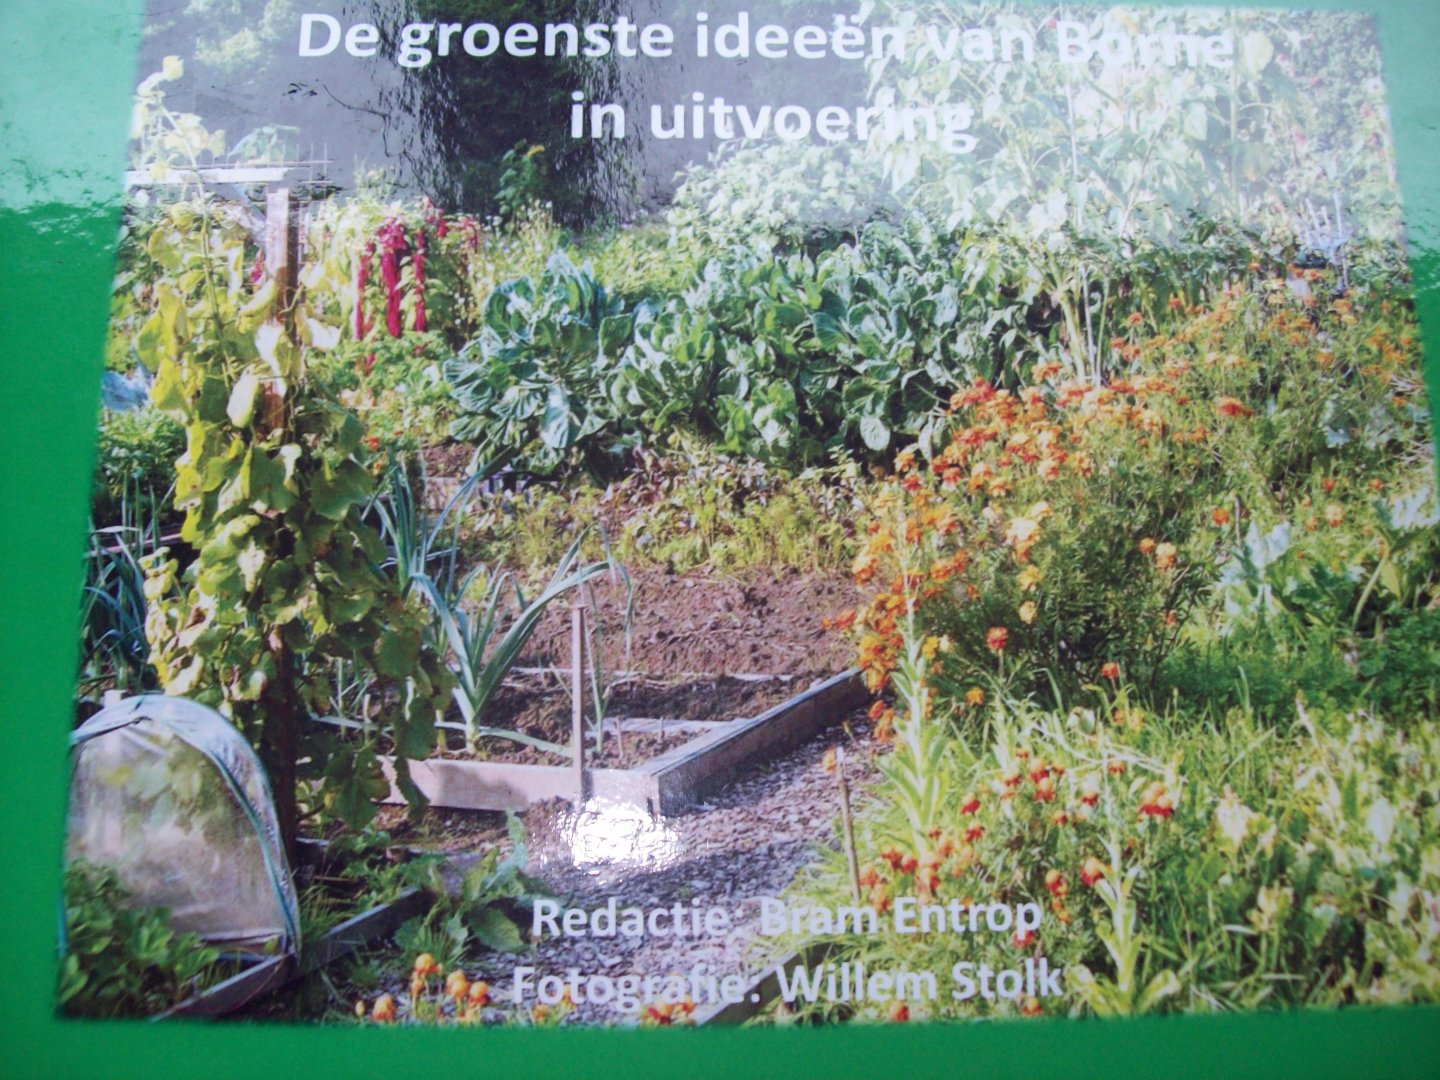 Bram Entrop & Willem Stolk - "De groenste ideeën van Borne in uitvoering"